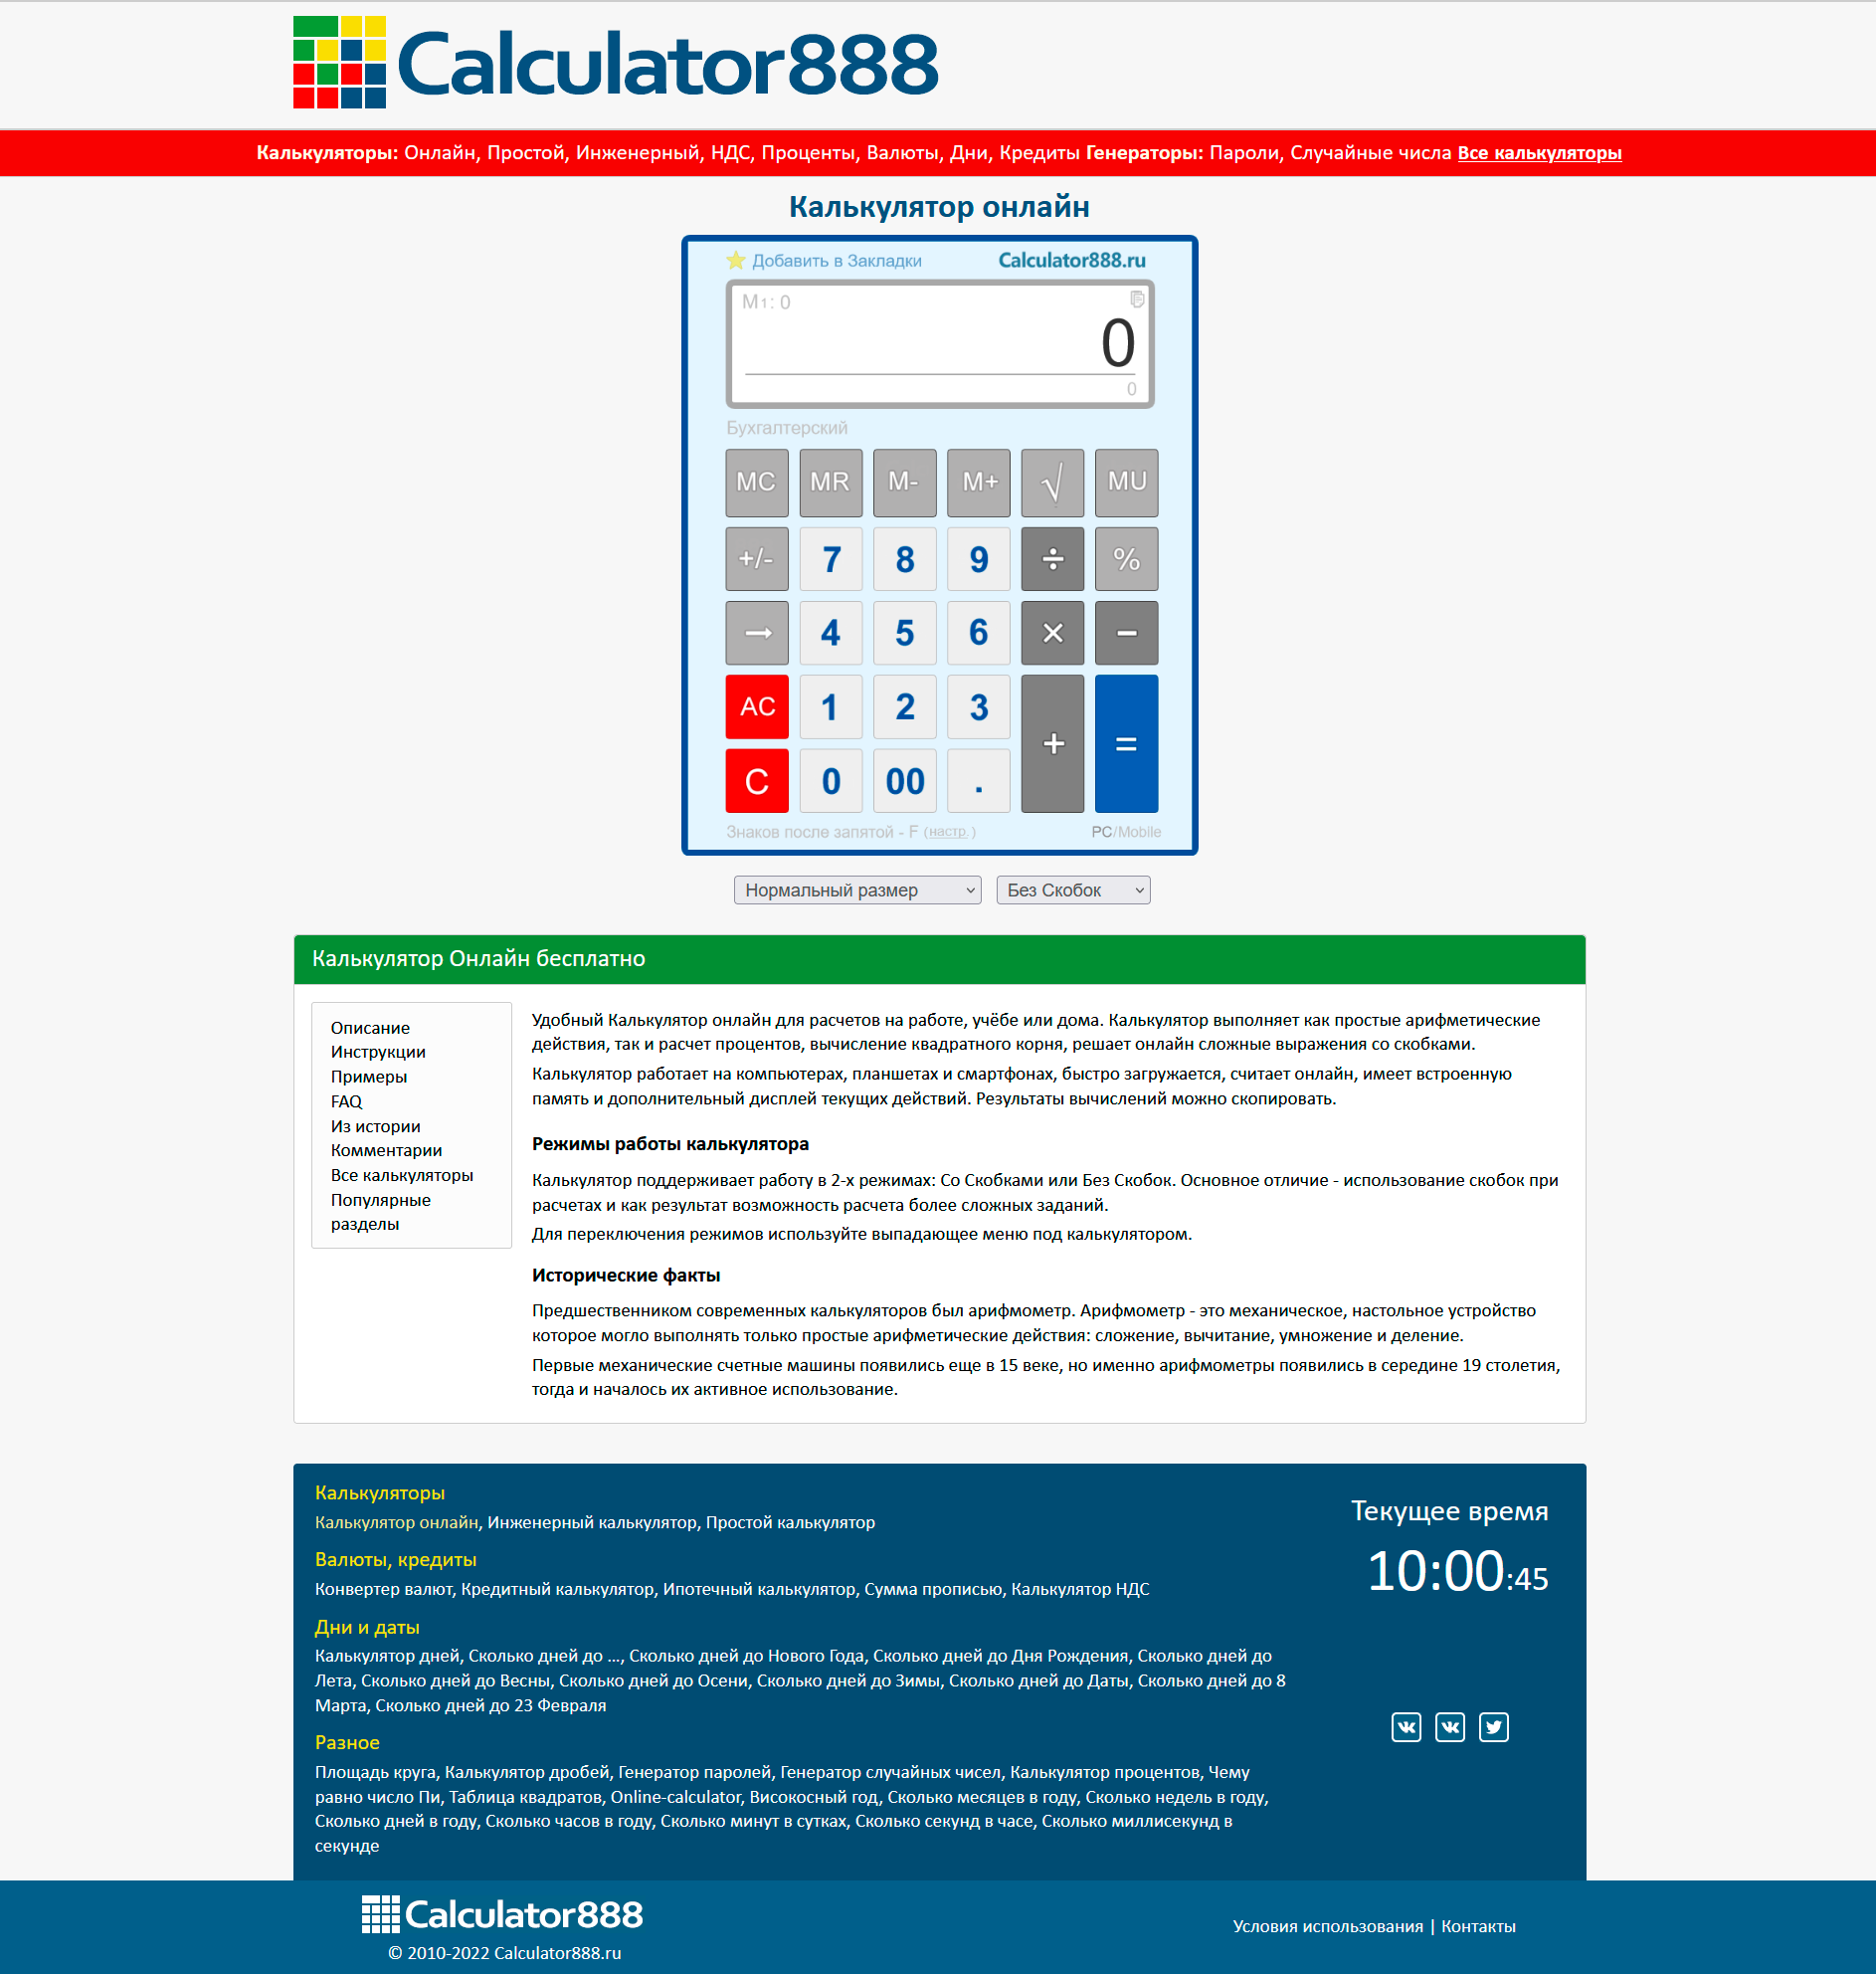 Calculator888.ru - лучший калькулятор онлайн